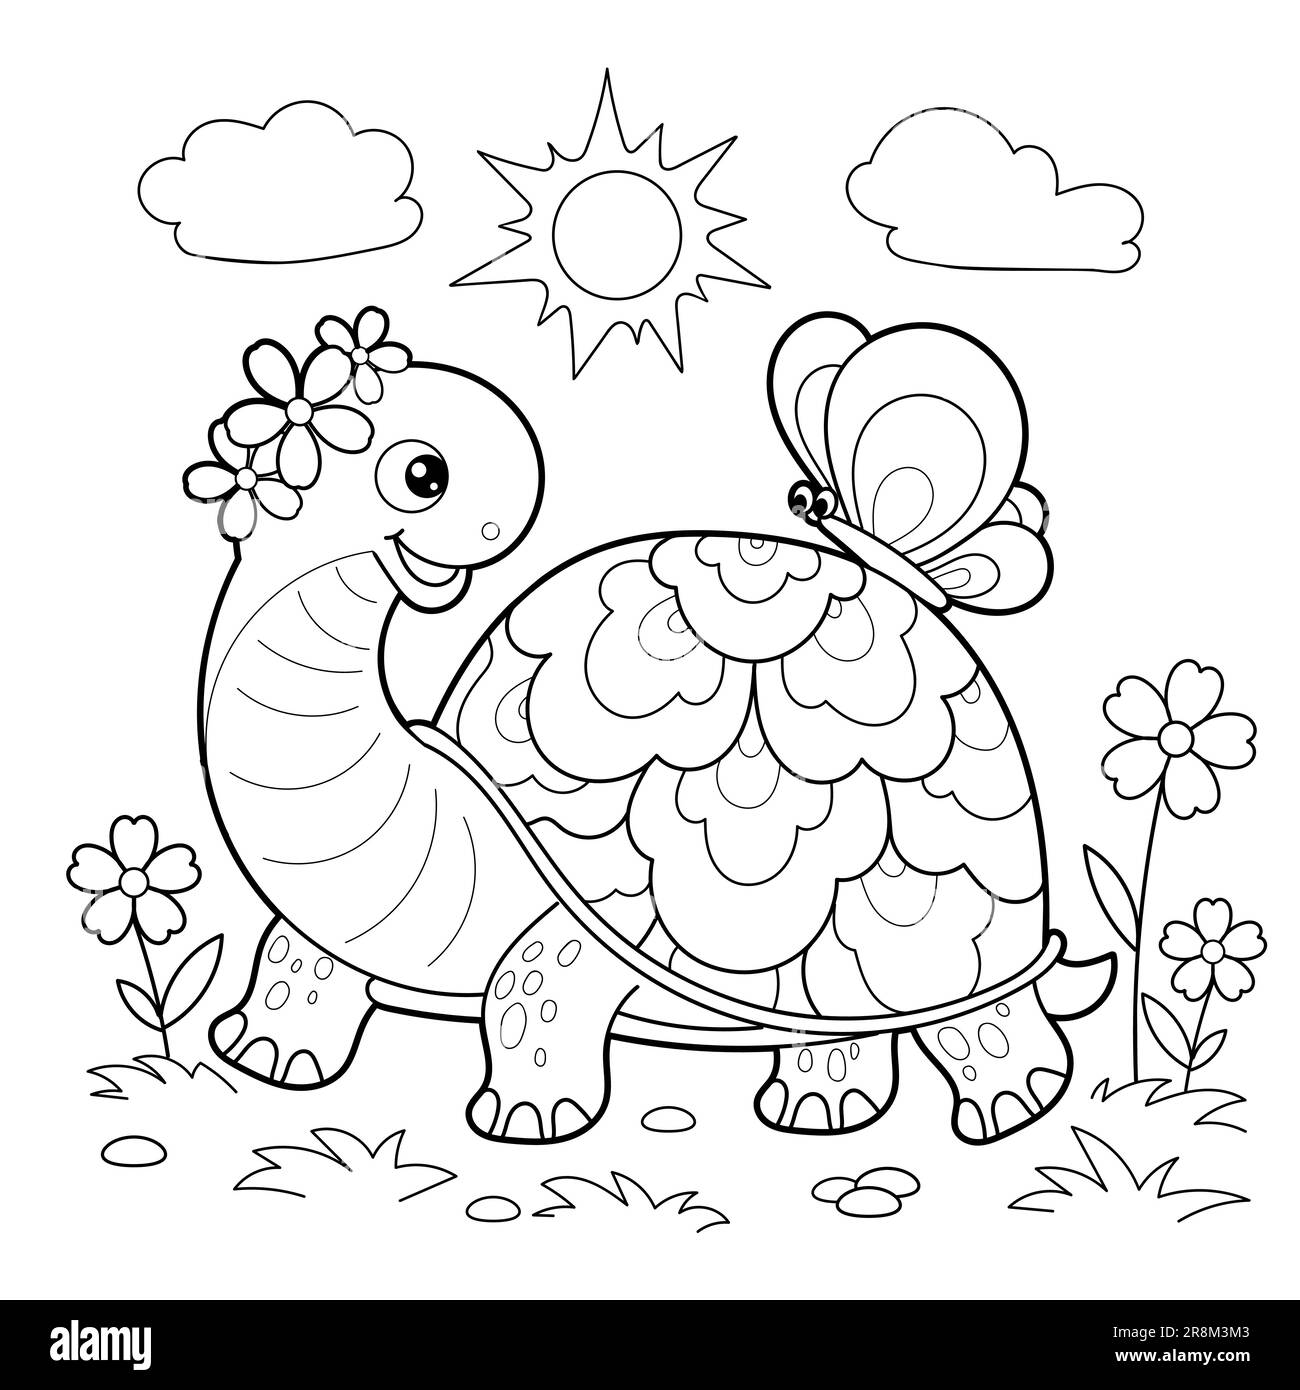 Dessin animé d'une tortue avec un papillon sur le dos. Dessin linéaire noir et blanc. Pour la conception de livres à colorier pour enfants, imprimés, affiches, cartes, stic Illustration de Vecteur